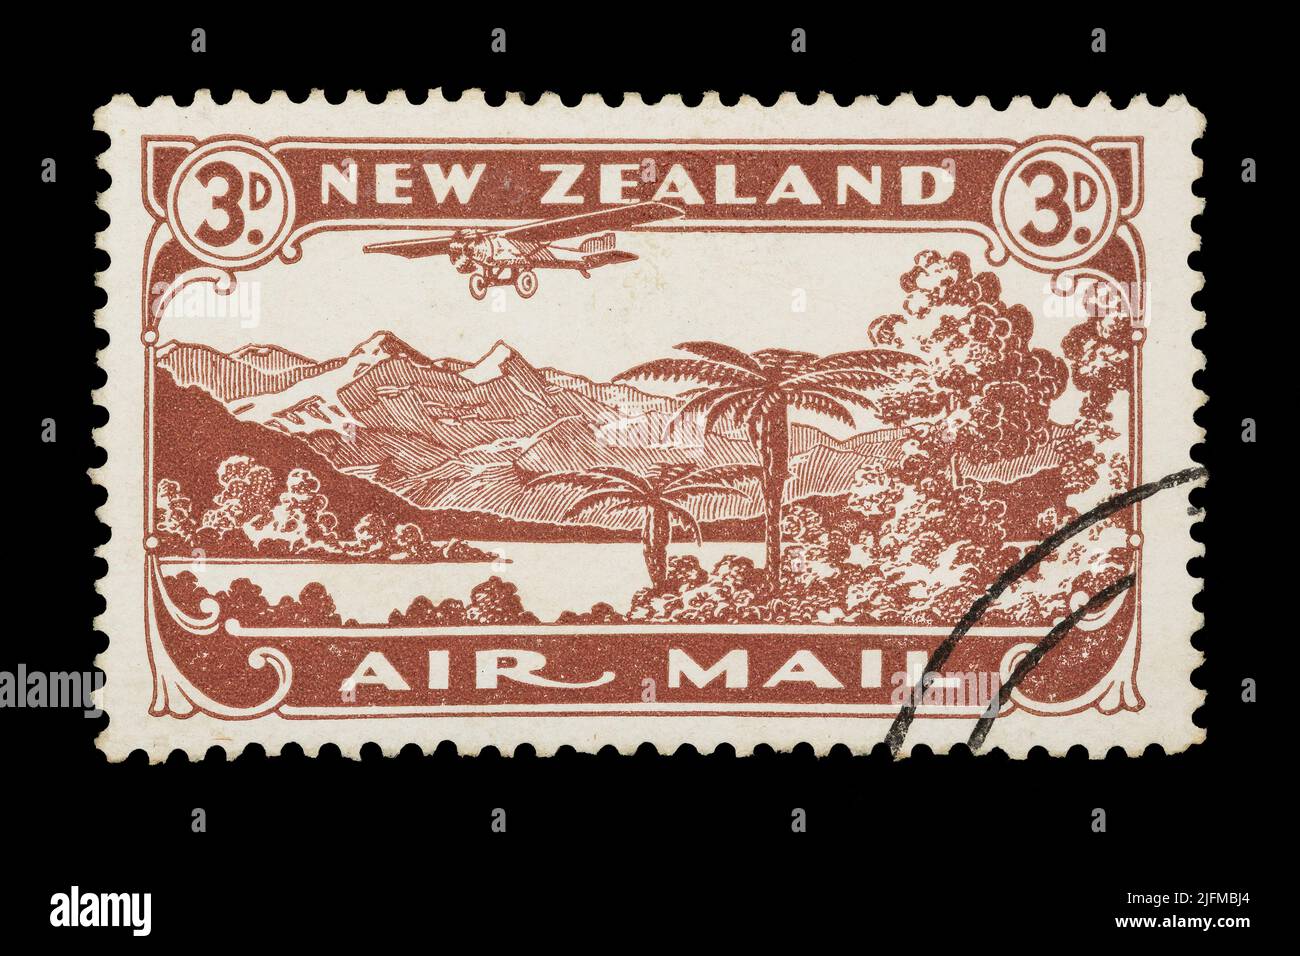 Timbre de poste aérien de la Nouvelle-Zélande de 1931, représentant un avion volant au-dessus d'un paysage néo-zélandais Banque D'Images